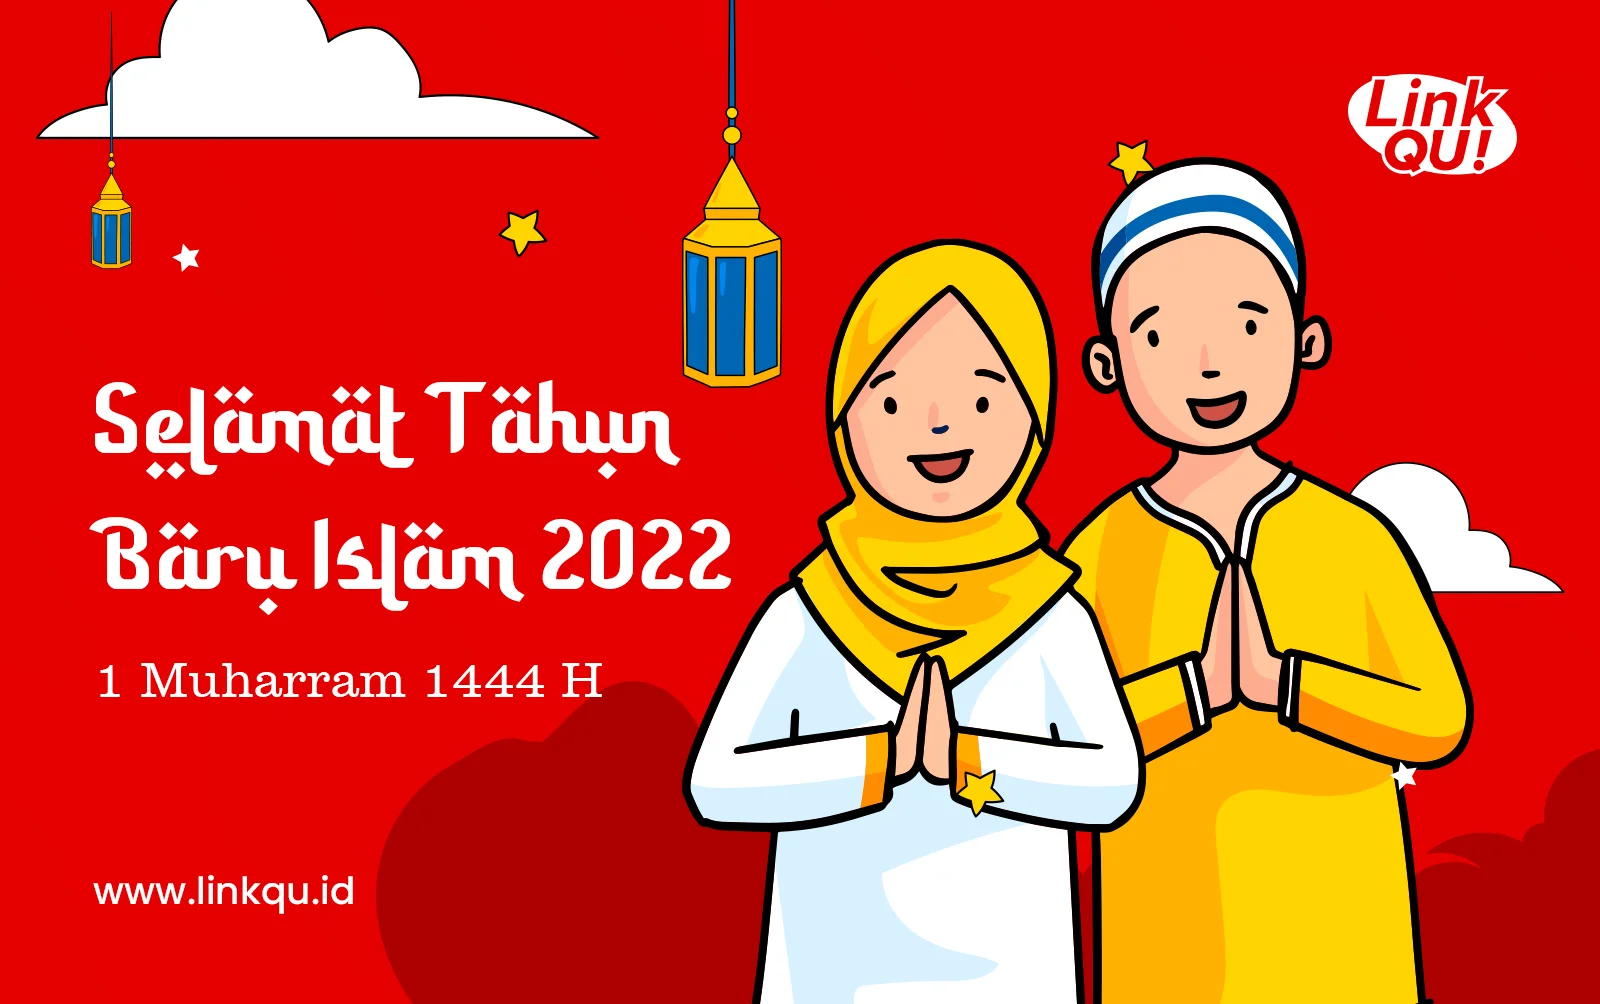 Selamat tahun baru islam 2022